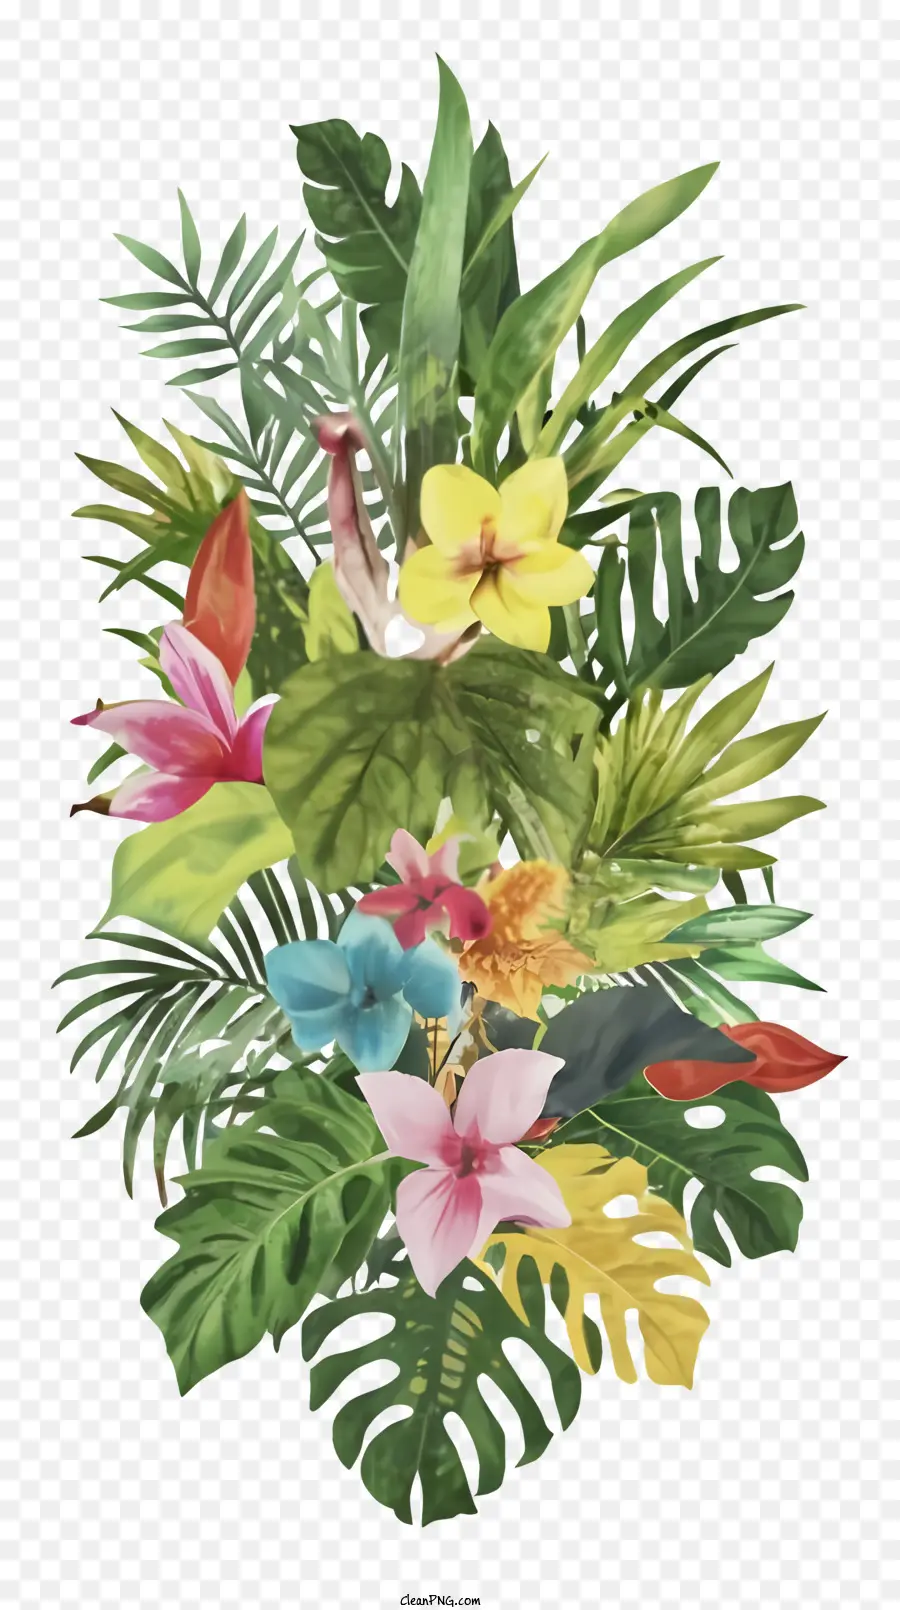 Tropische Blumen Heliconia Vogel der Blumen Arrangement Vase oder Korb - Große Anordnung der tropischen Blüten auf schwarzem Hintergrund